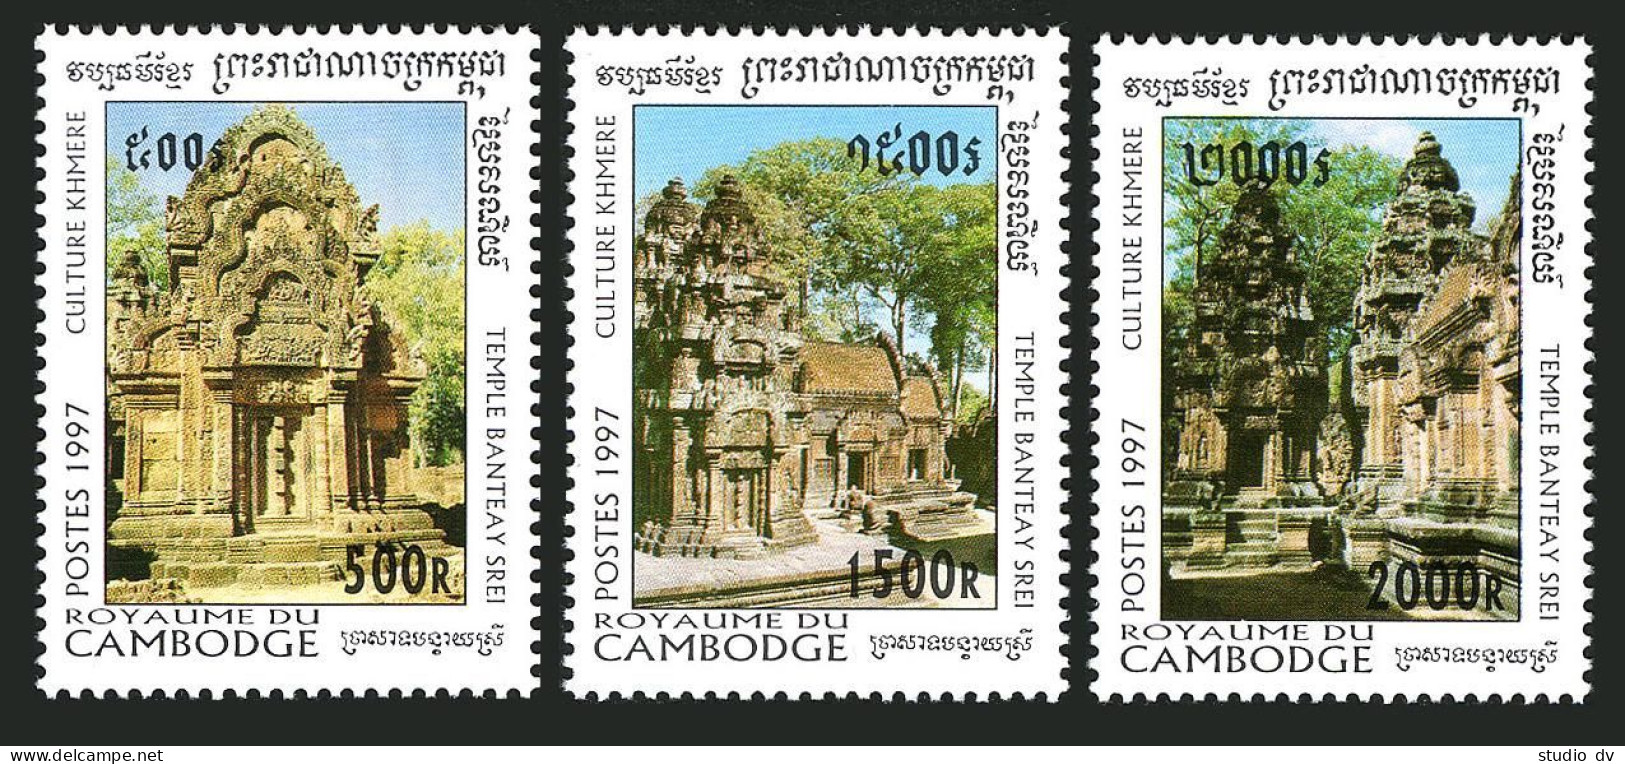 Cambodia 1621-1623,MNH.Michel 1714-1716. Khmer Culture,1997.Bantea Srei Temple. - Cambodia